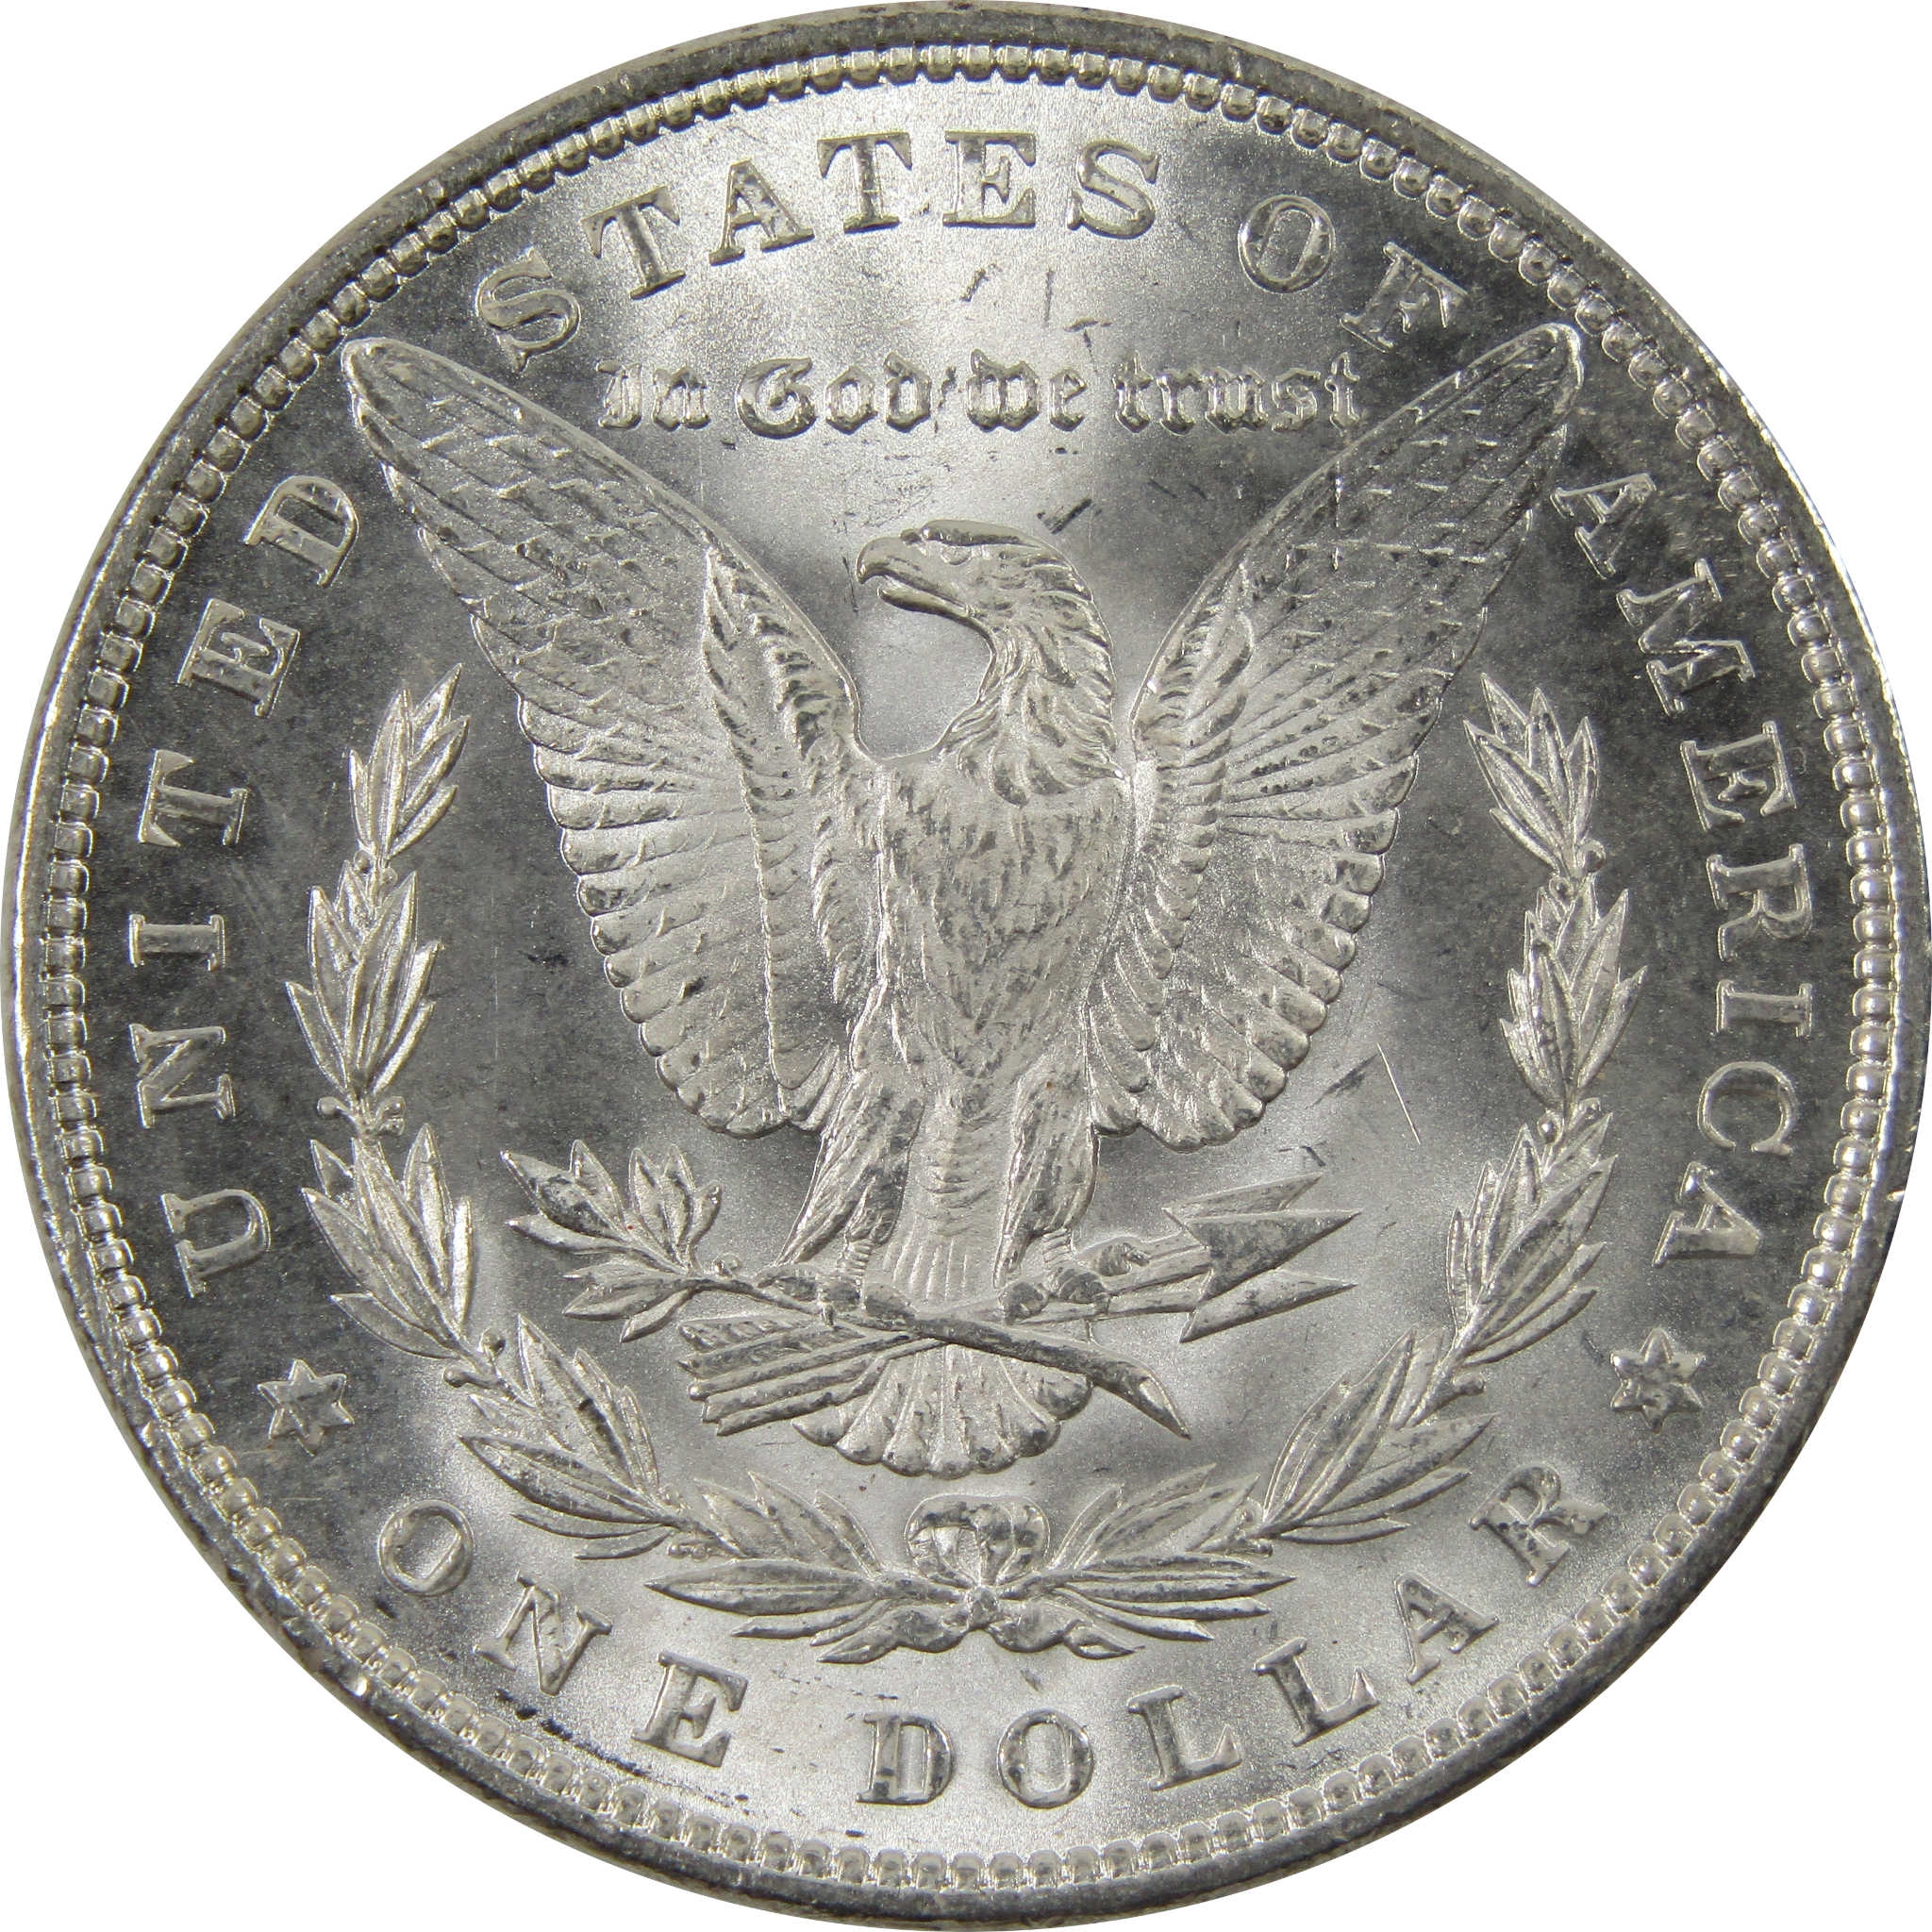 1888 Morgan Dollar BU Uncirculated 90% Silver $1 Coin SKU:I9344 - Morgan coin - Morgan silver dollar - Morgan silver dollar for sale - Profile Coins &amp; Collectibles